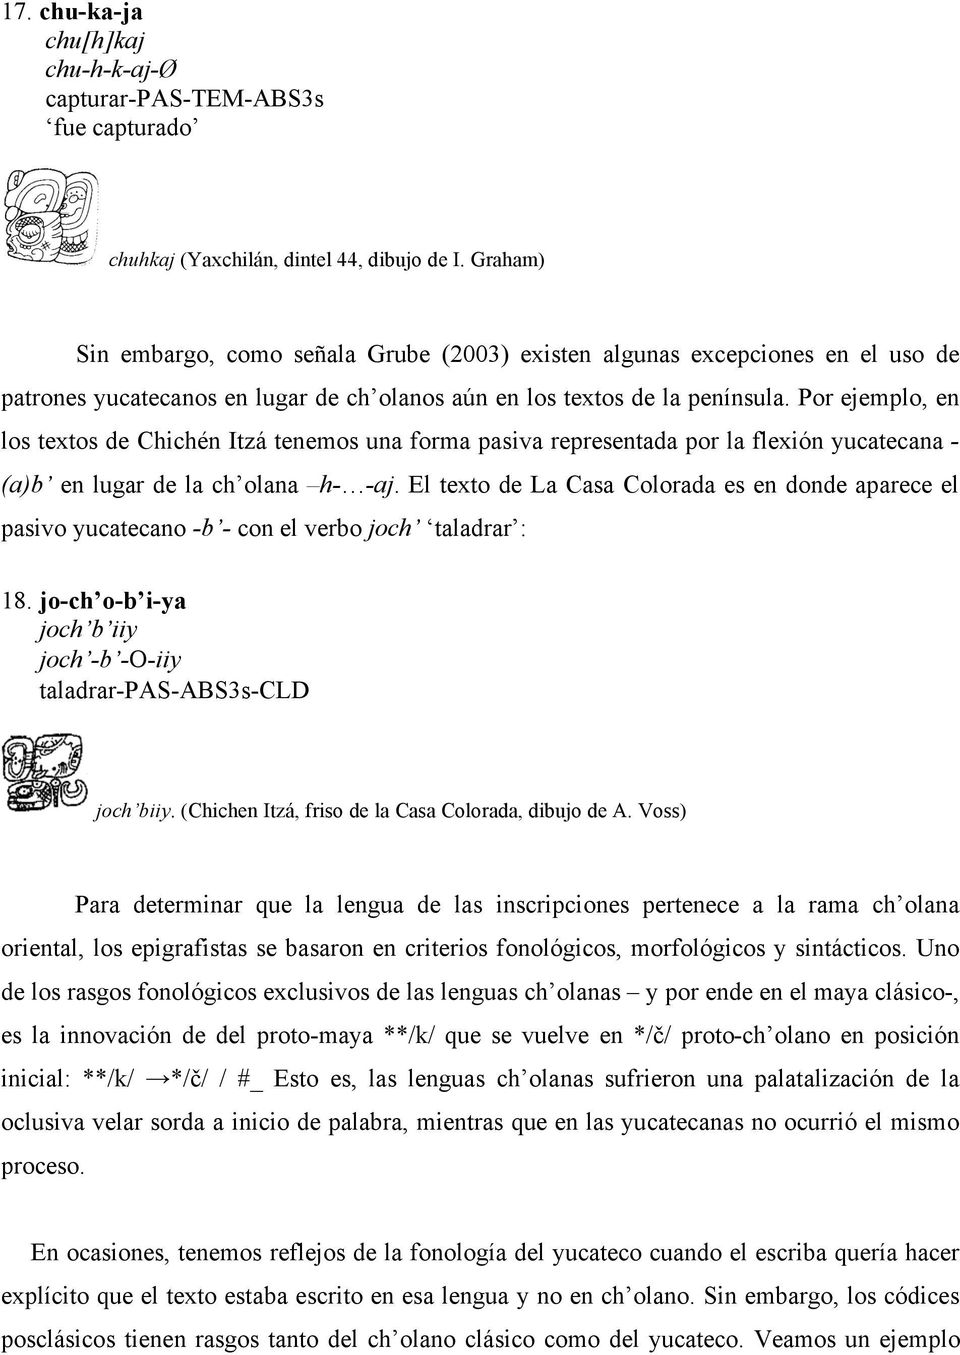 Por ejemplo, en los textos de Chichén Itzá tenemos una forma pasiva representada por la flexión yucatecana - (a)b en lugar de la ch olana h- -aj.